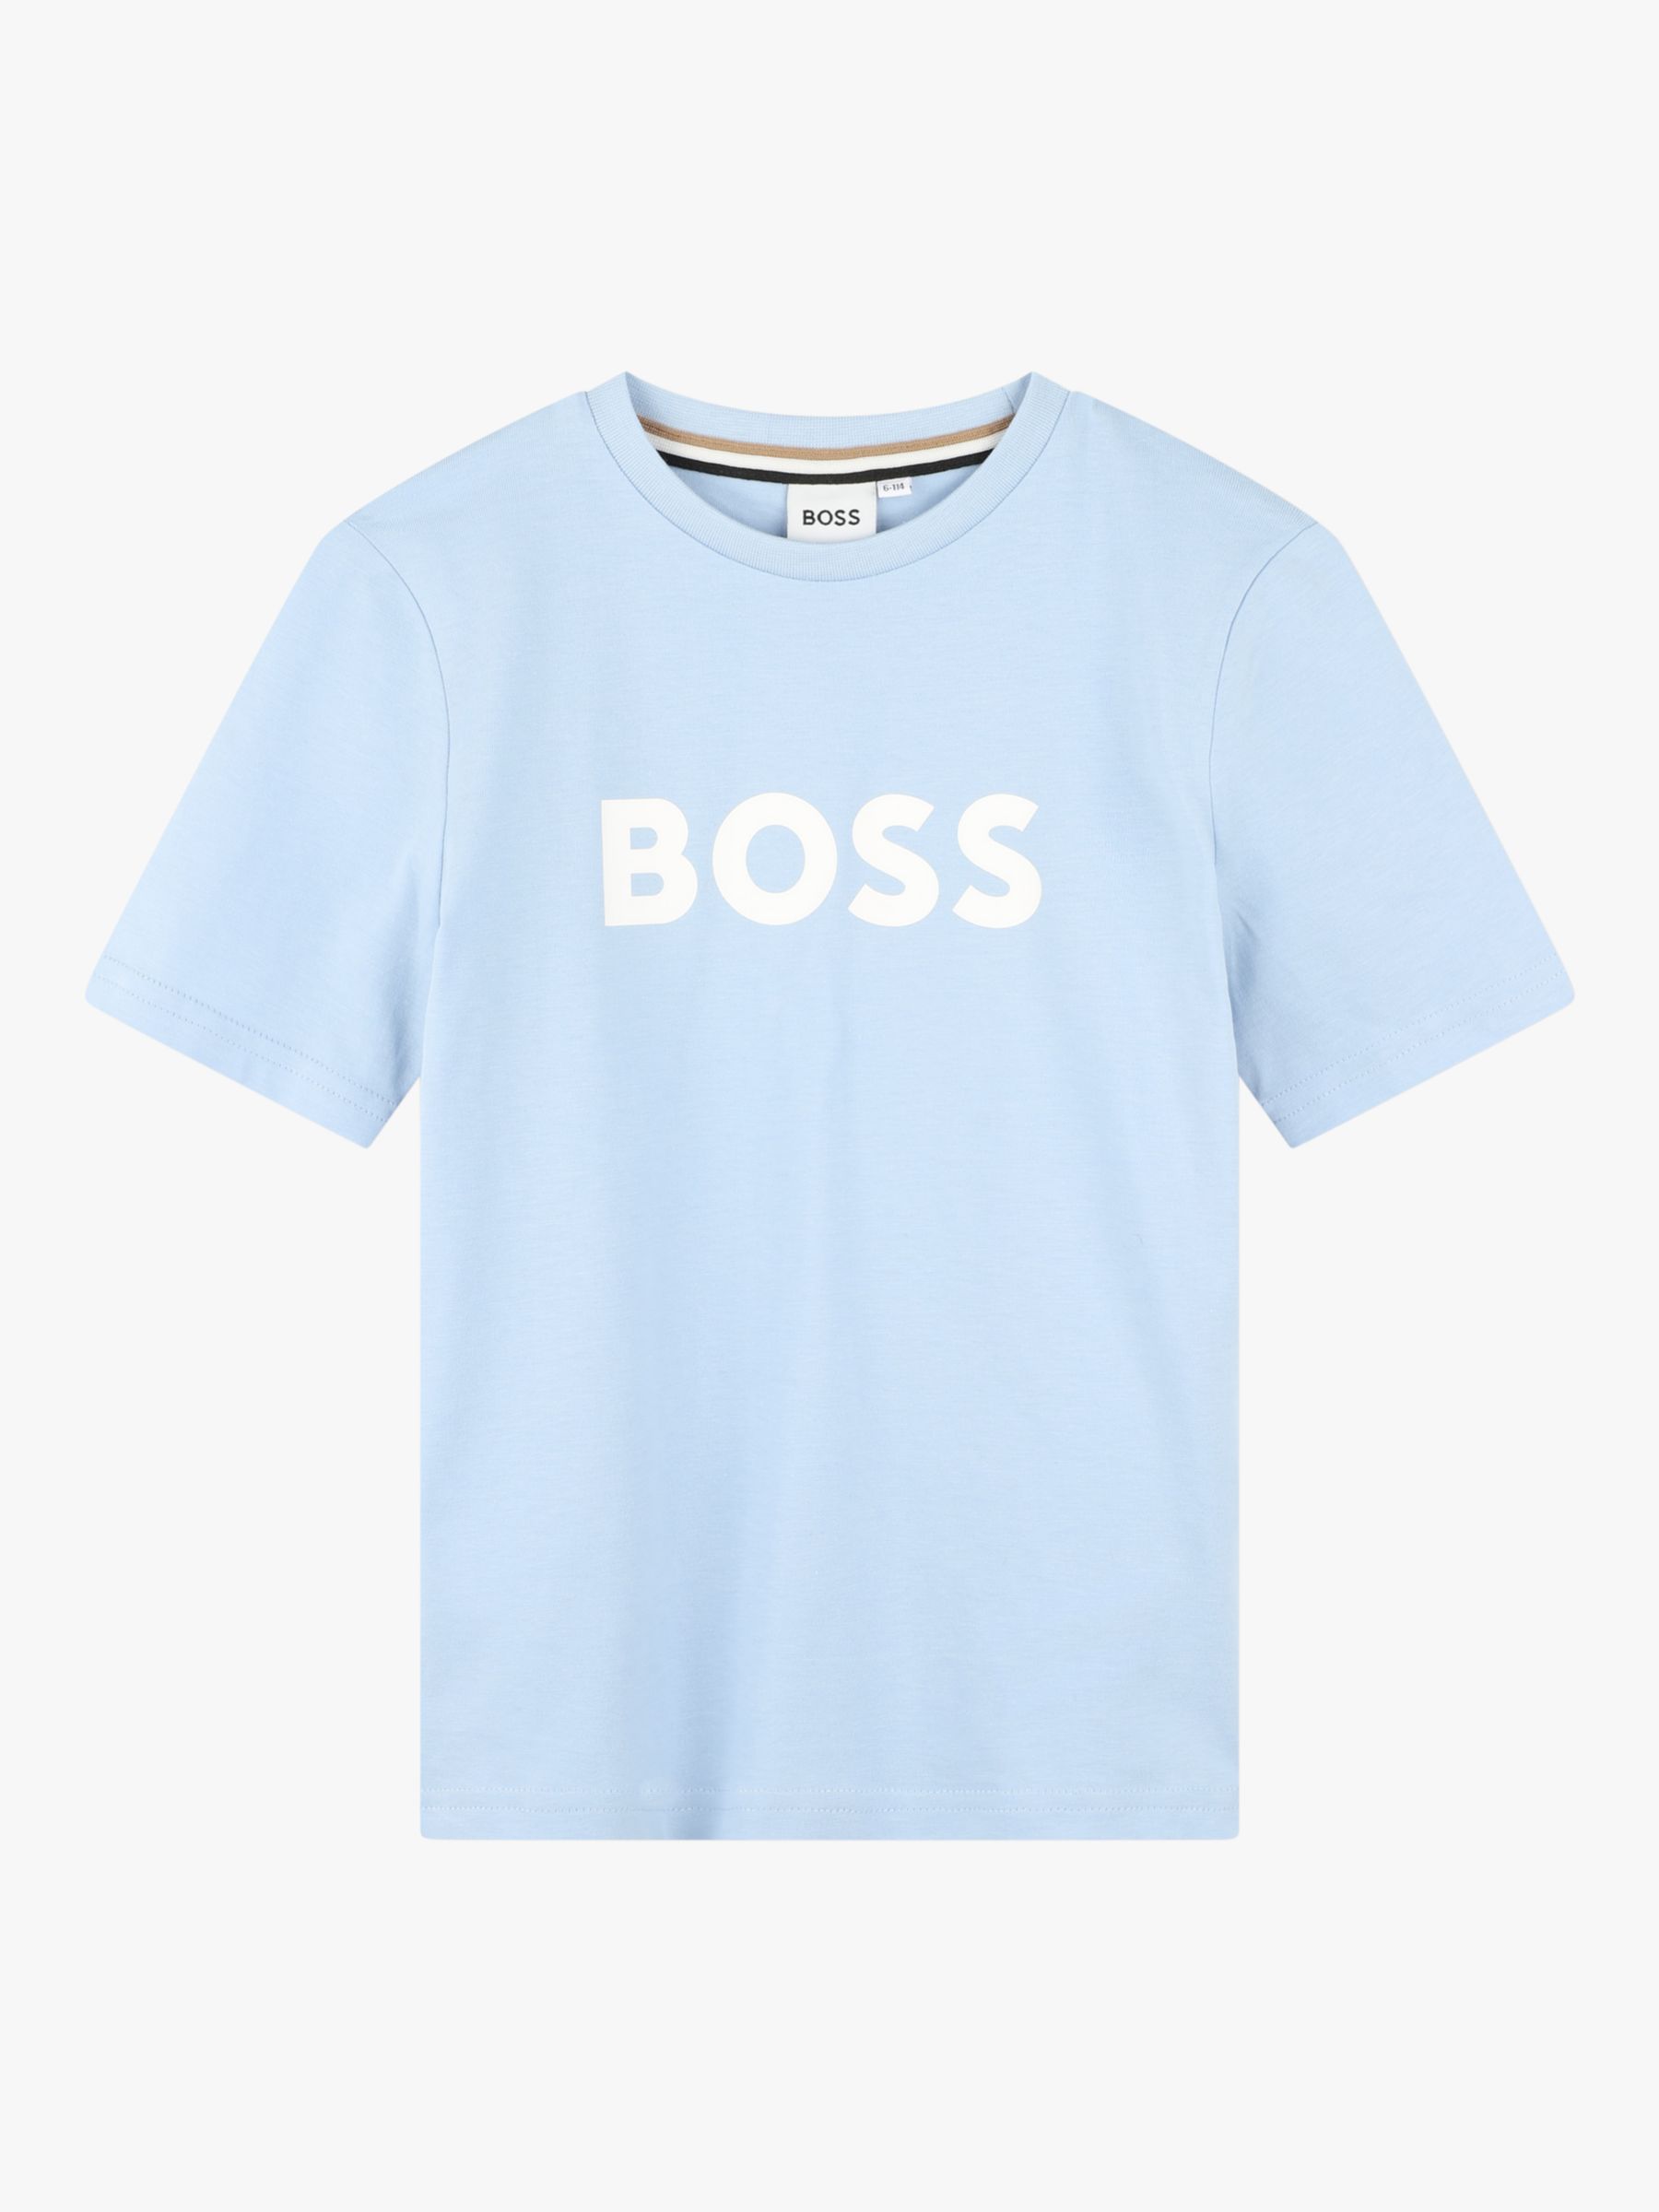 BOSS Kids' Logo Short Sleeve T-Shirt, Light Blue, 4 years